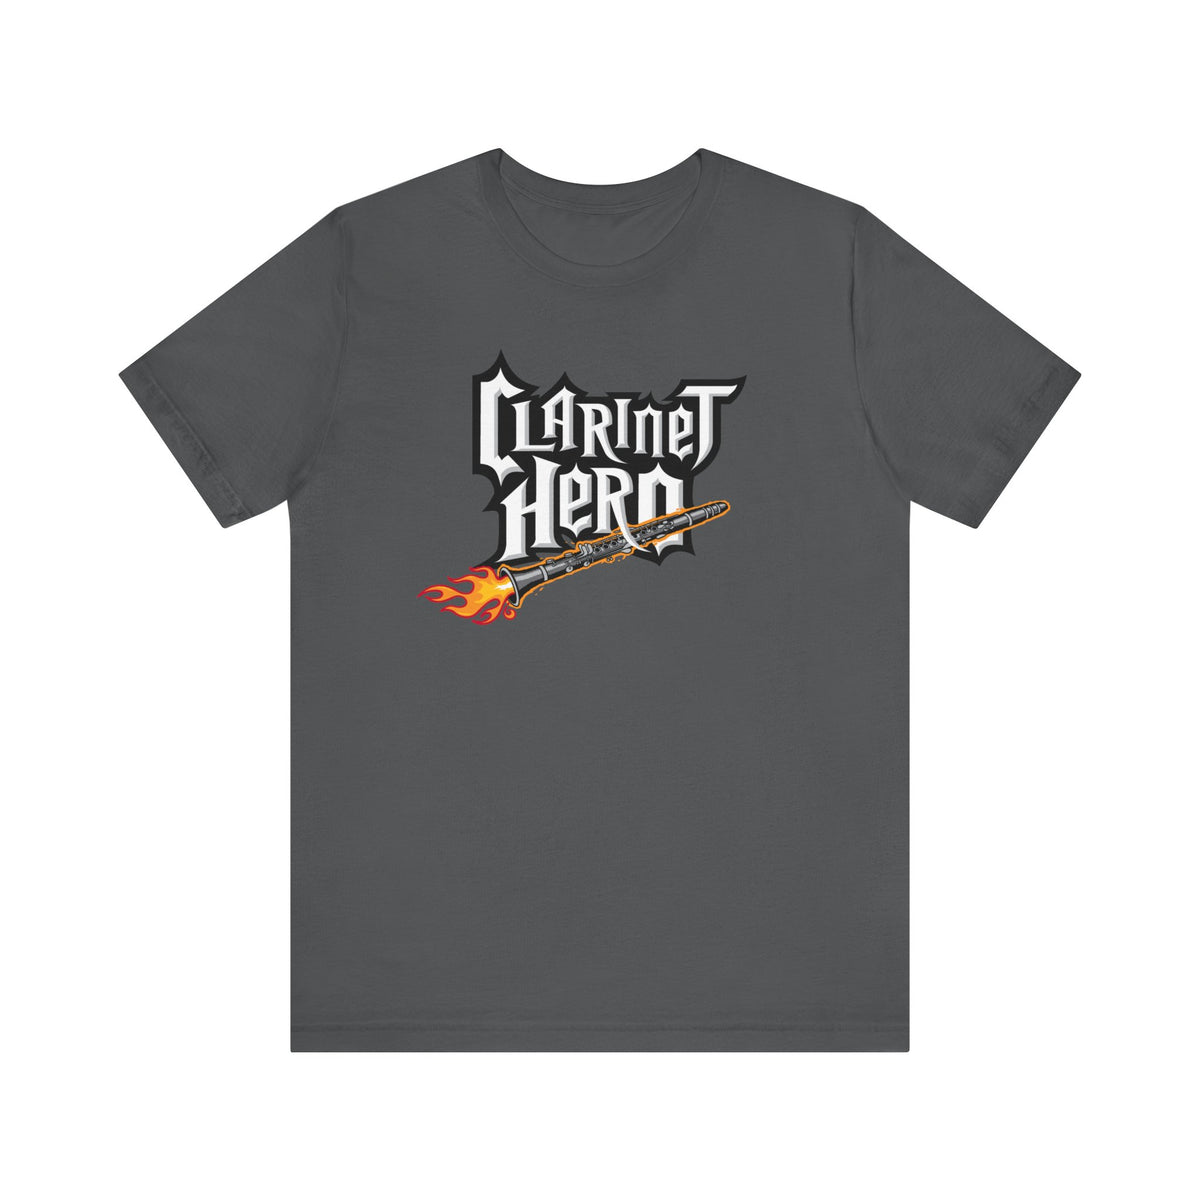 Clarinet Hero - Men's T-Shirt